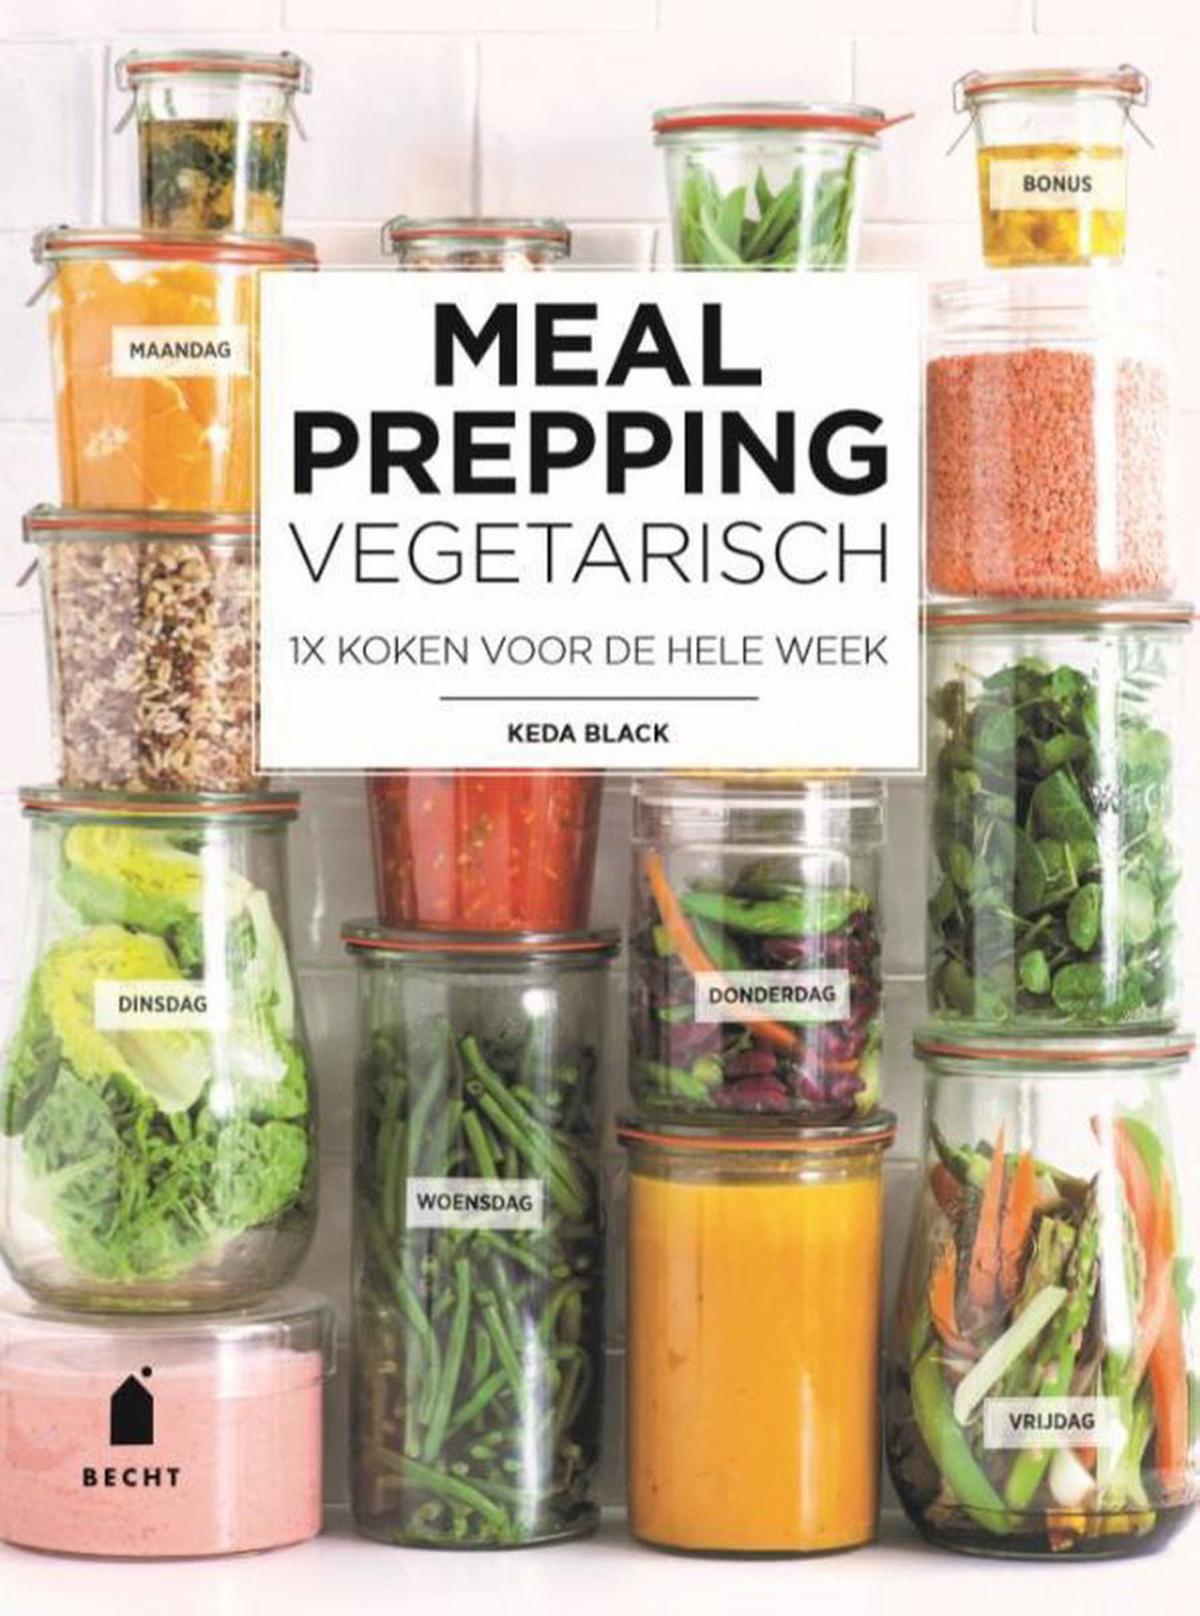 'Meal prepping vegetarisch' van Keda Black